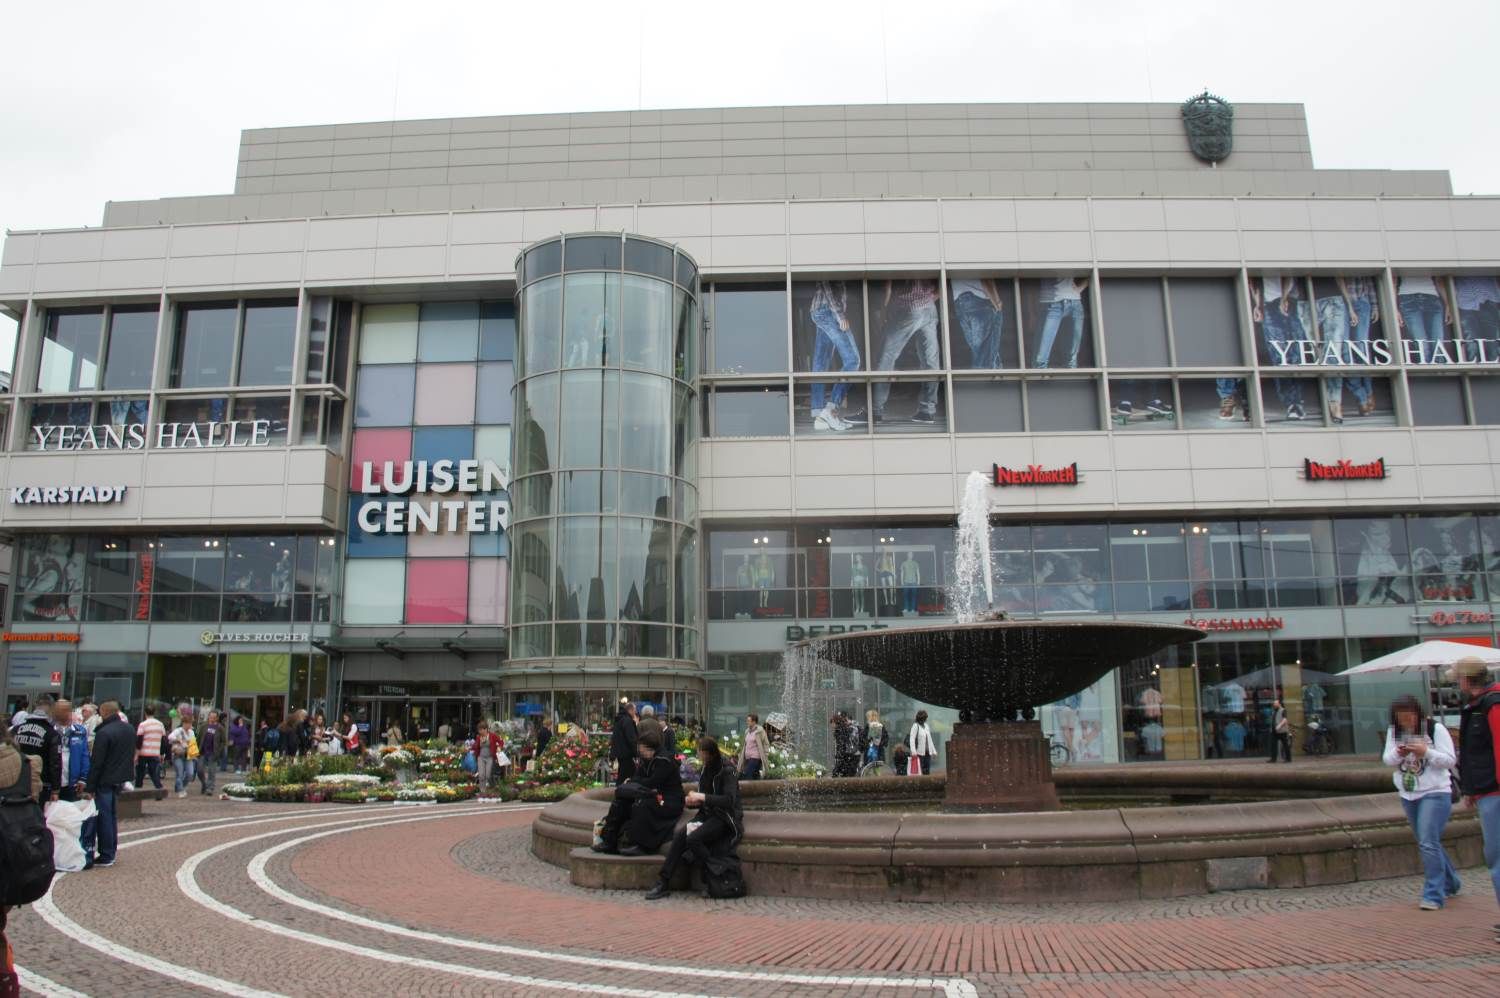 Bilder und Fotos zu Luisen-Center in Darmstadt, Luisenplatz